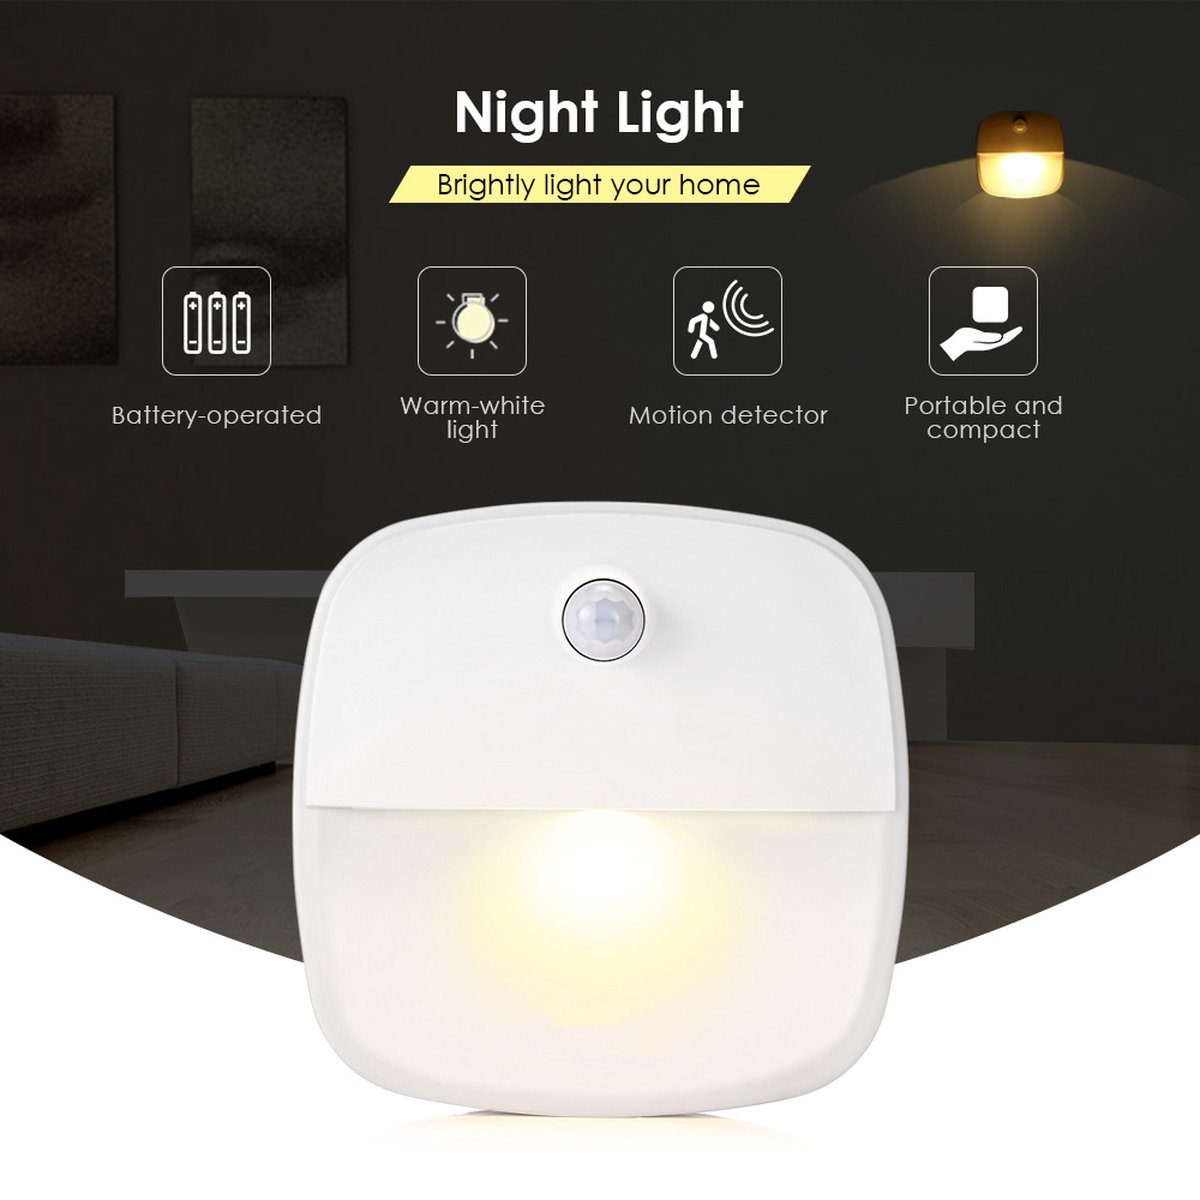 1 x Nachtlampje met bewegingssensor - Draadloos - voor o.a. Slaapkamer, Overloop, Garage - Dag en Nacht Sensor | Werkt op 3 AAA batterijen - MoetIkHebben